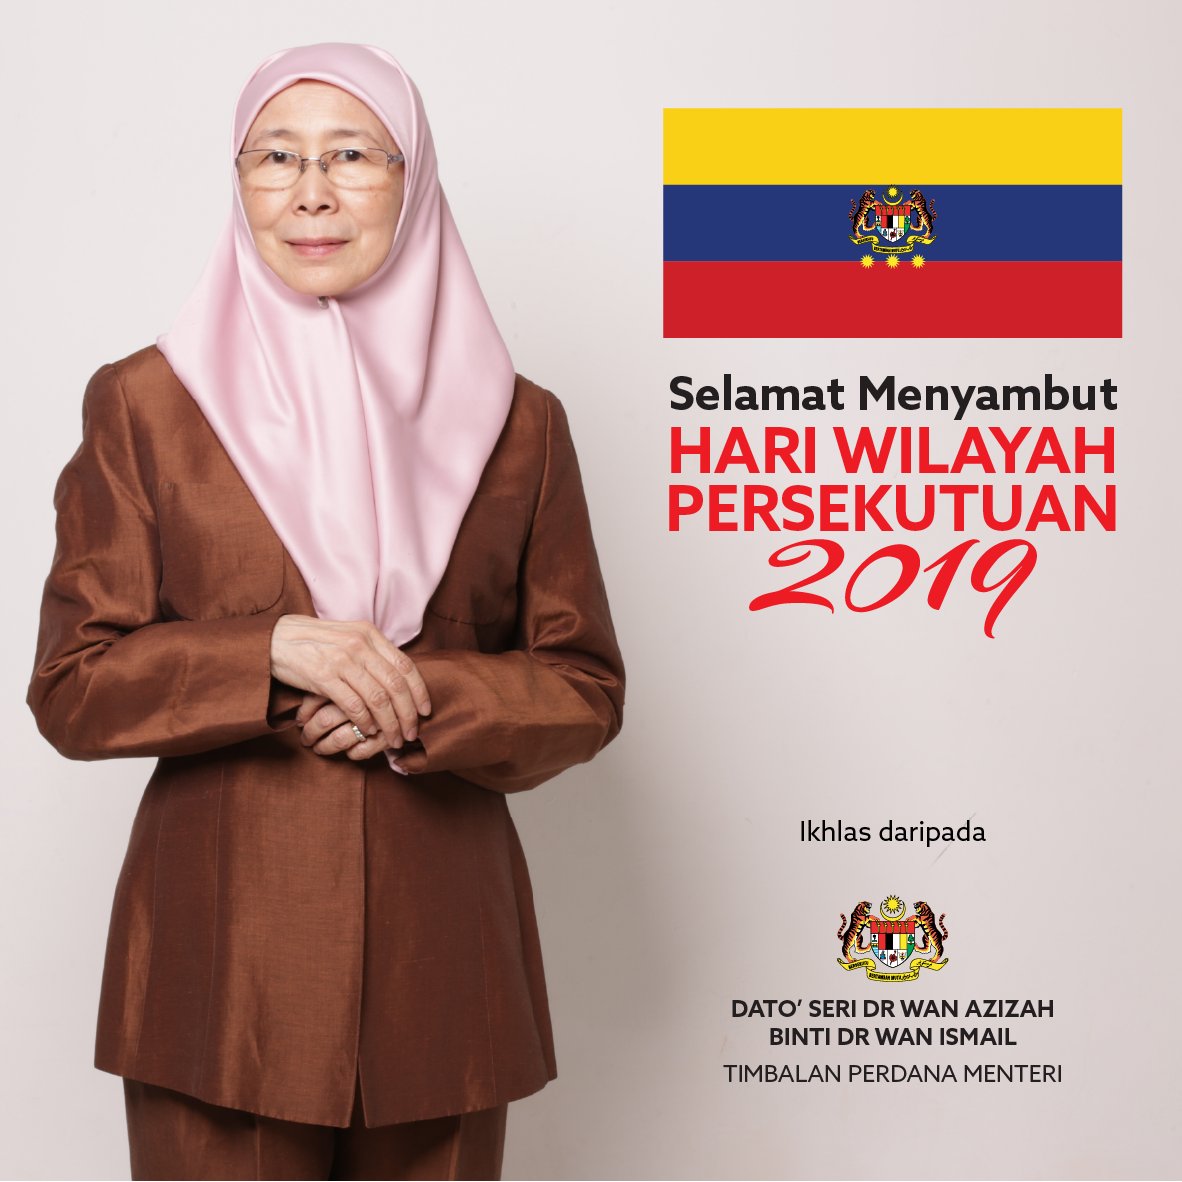 Dr Wan Azizah Ismail On Twitter Selamat Menyambut Hari Wilayah Persekutuan 2019 Hati Hati Memandu Buat Yang Mengambil Kesempatan Untuk Pulang Ke Kampung Atau Bercuti Https T Co Yiifwbyw5l